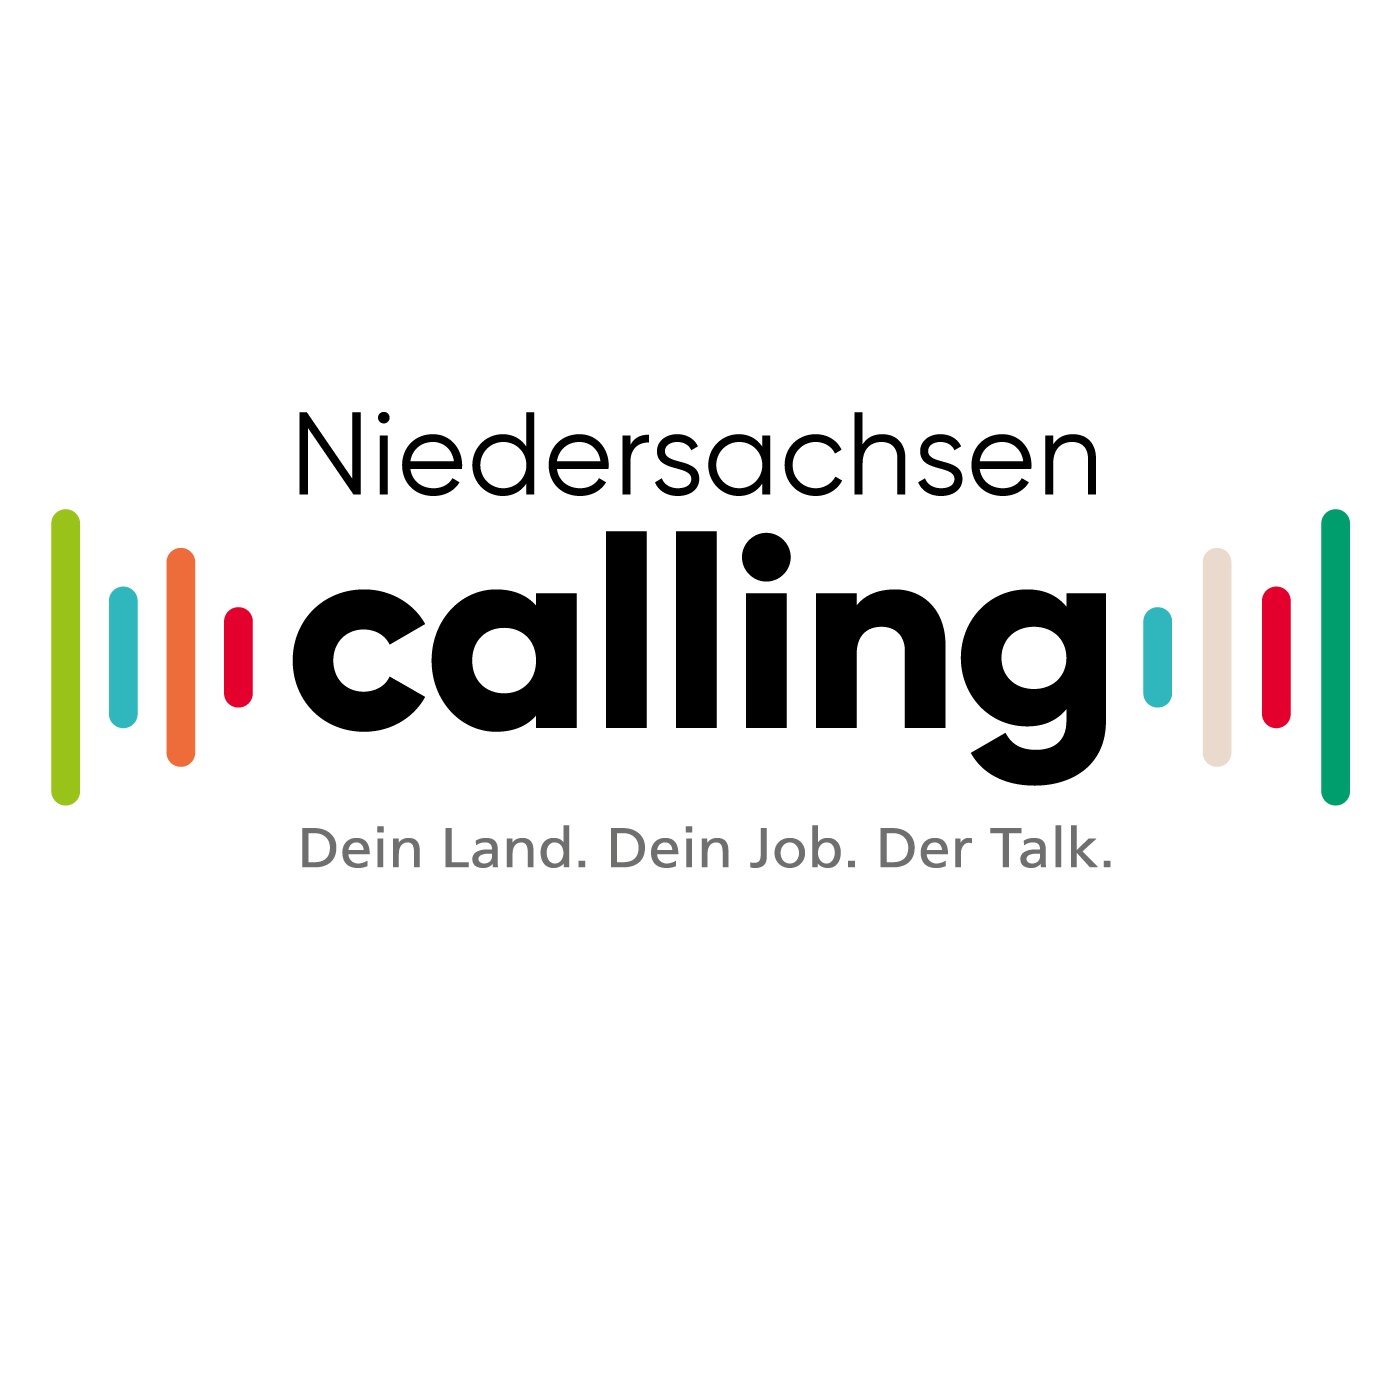 #22 Niedersachsen goes international – Inger Steffen